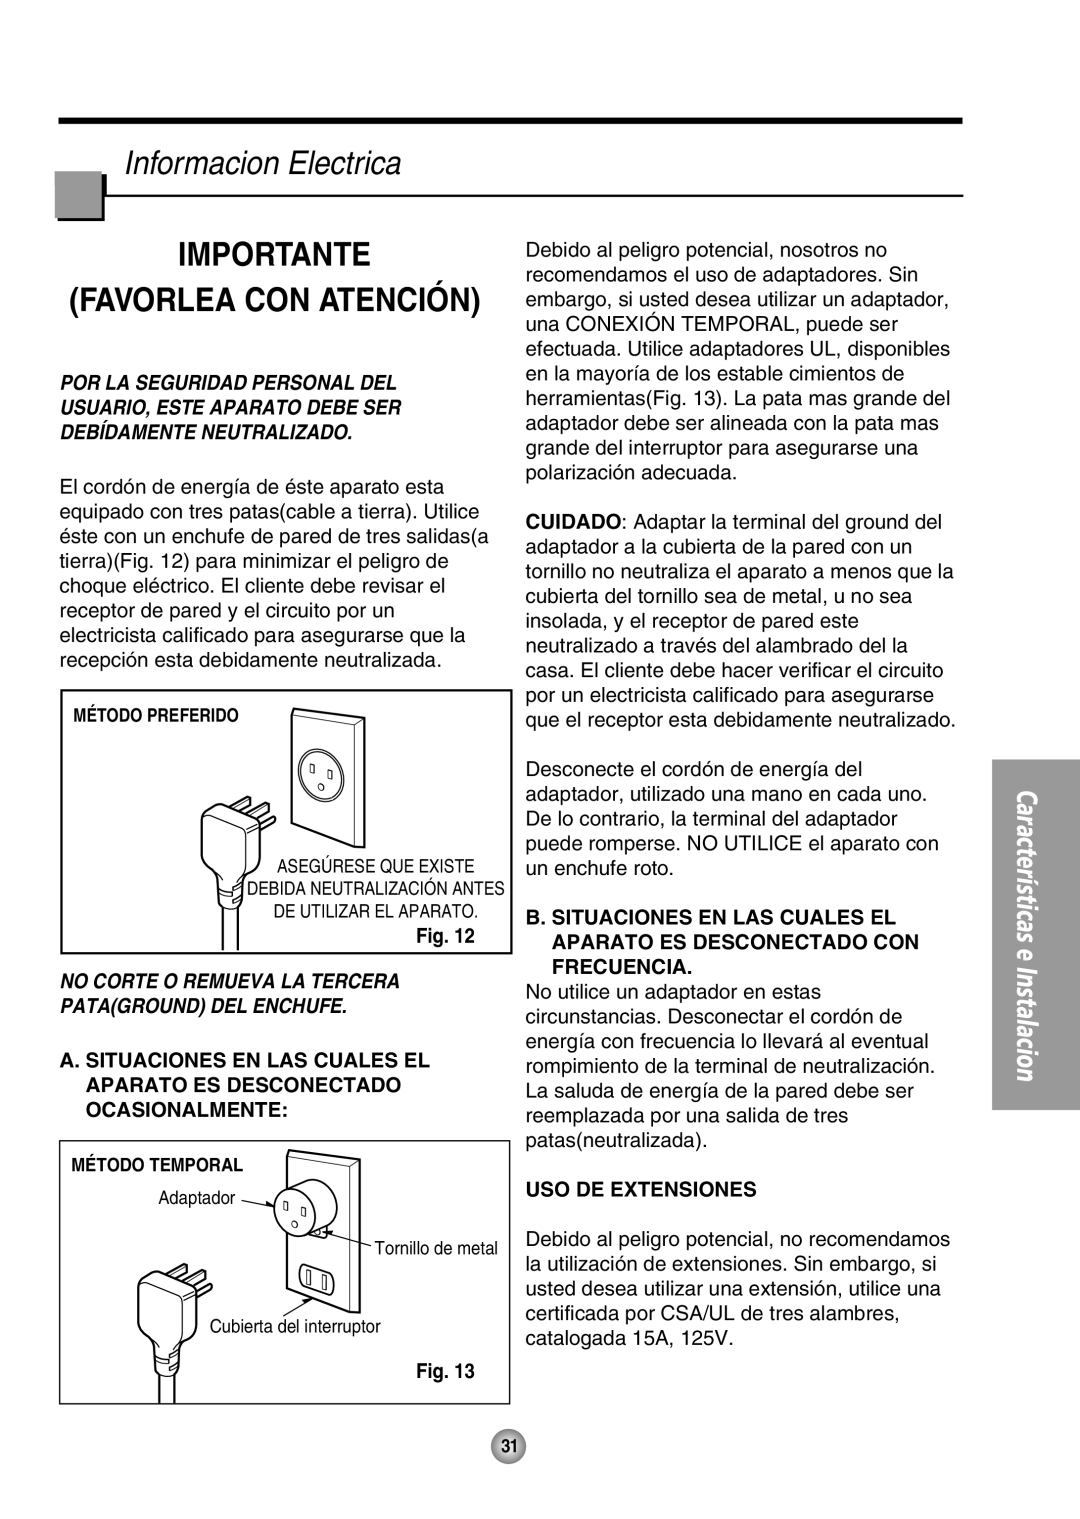 Panasonic CW-XC80HU manual Informacion Electrica, Importante Favorlea Con Atención, Uso De Extensiones 